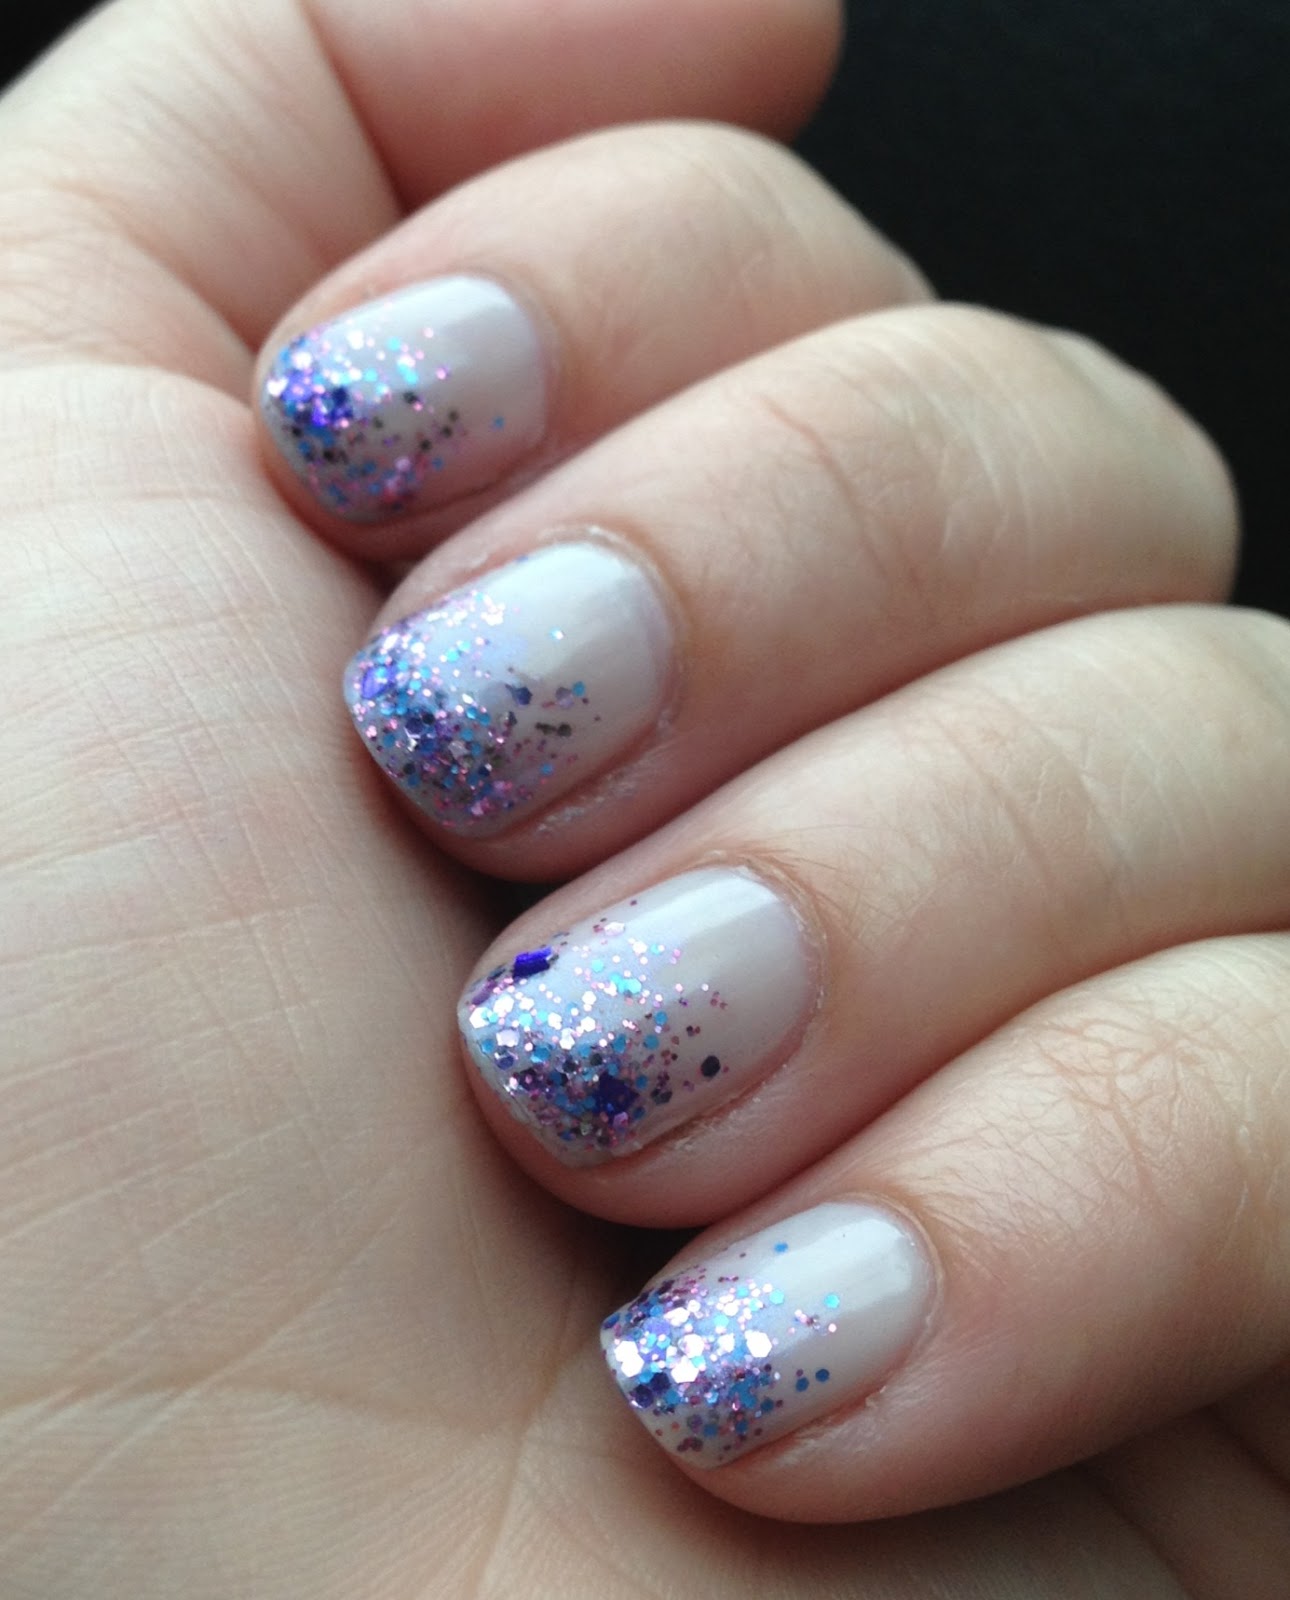 Smashley Sparkles: My Wedding Nails!